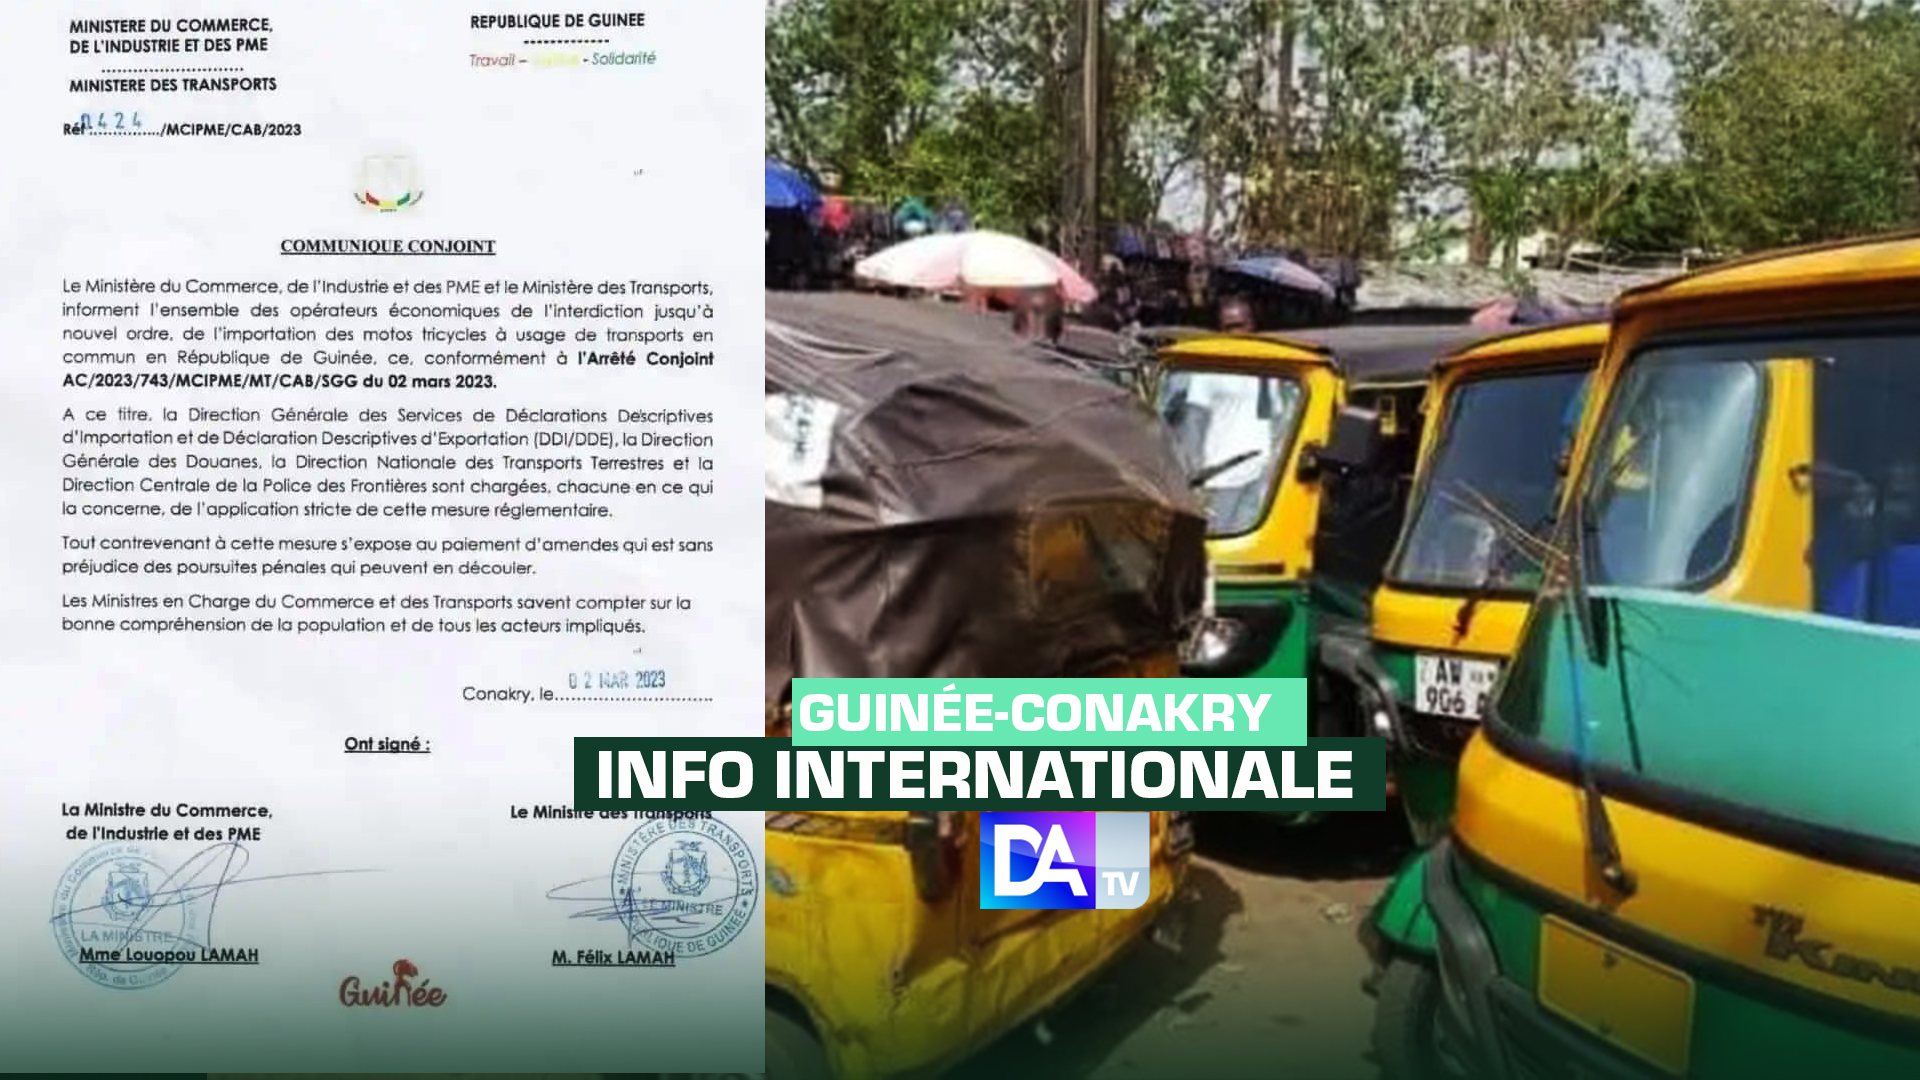 Guinée-Conakry : un communiqué conjoint des ministres du commerce et du transport interdit l'importation de motos tricycles à usage de transport en commun...